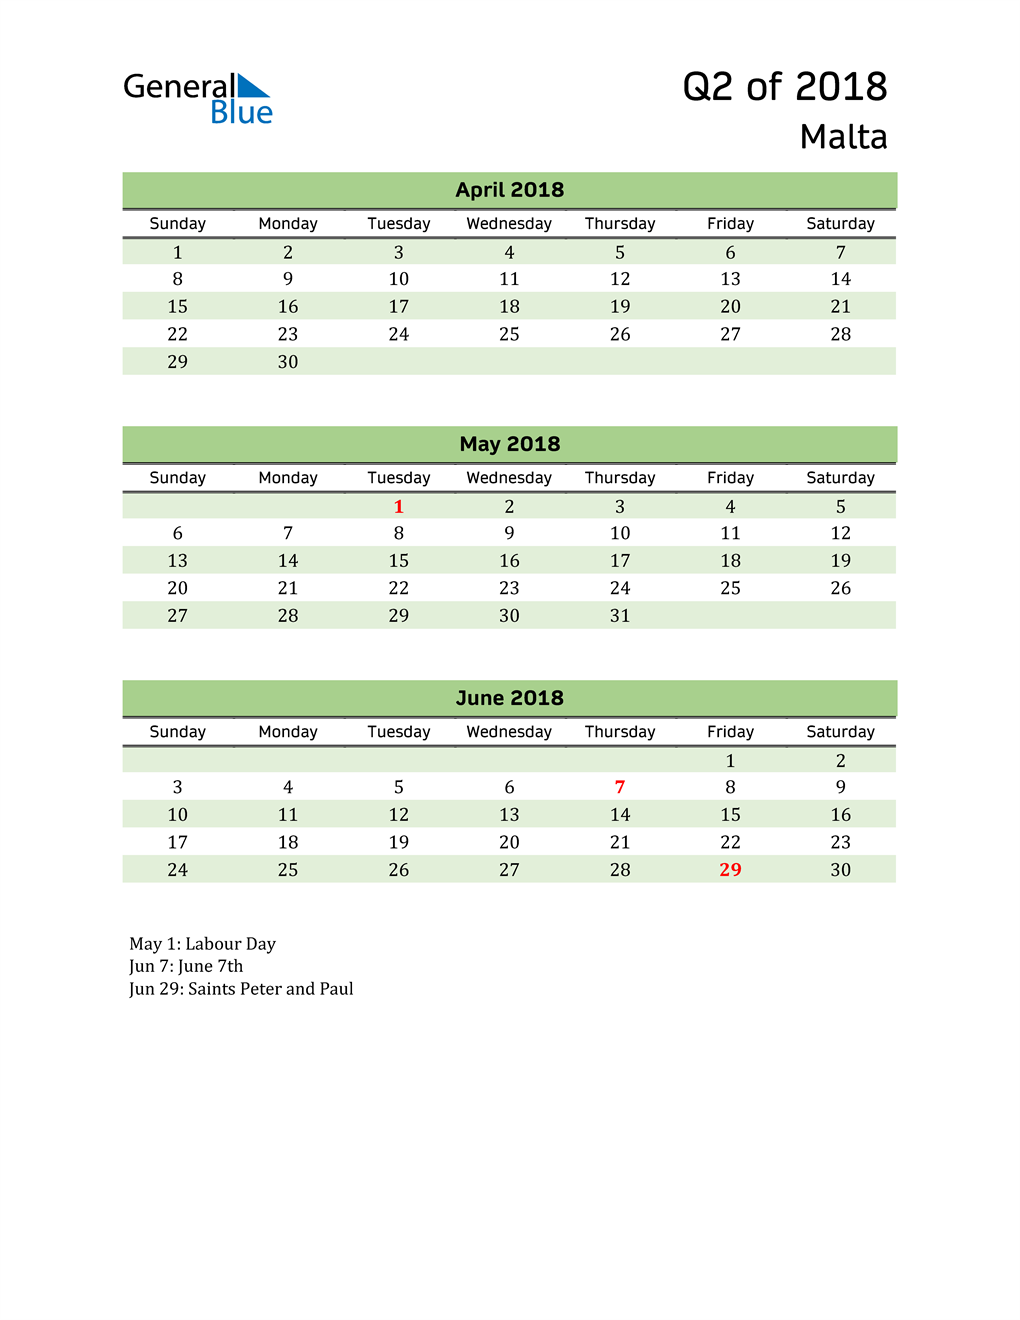  Quarterly Calendar 2018 with Malta Holidays 